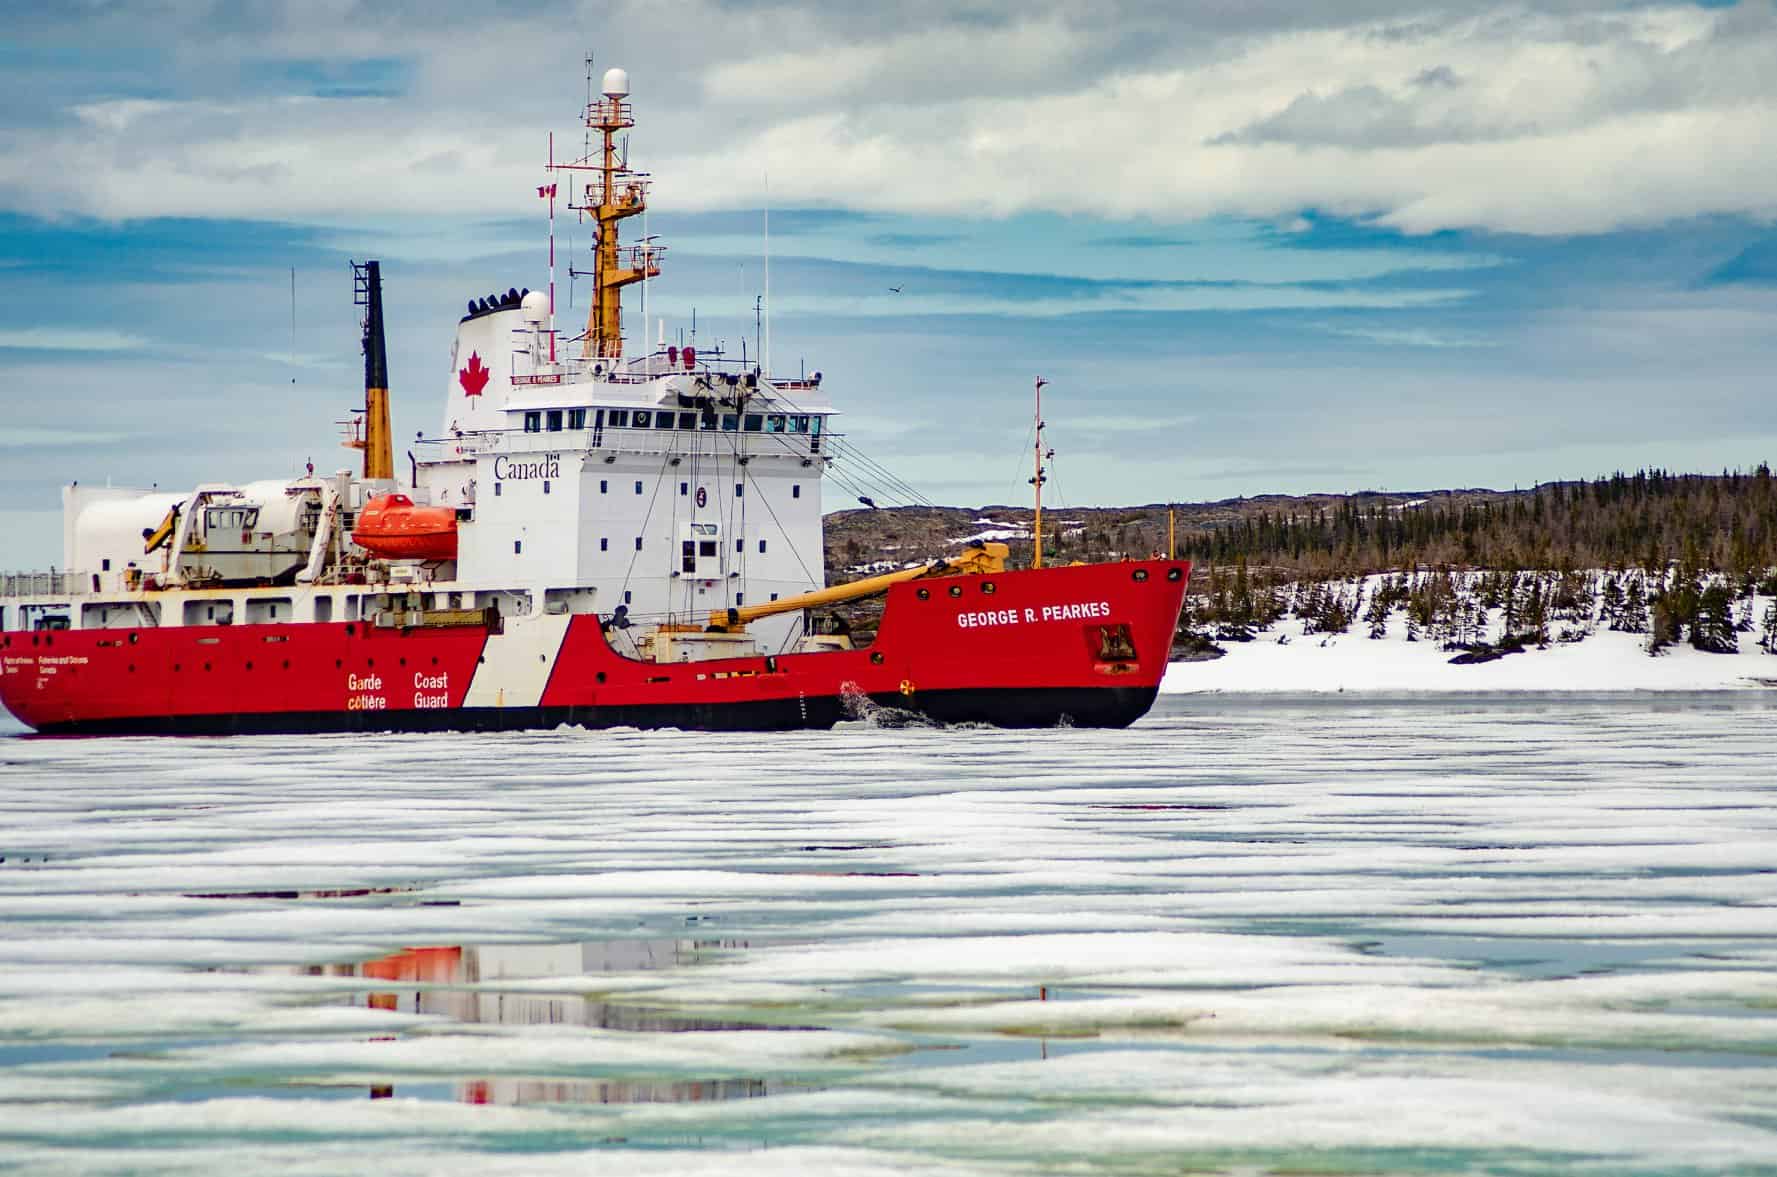 Hamilton company gets $36.14 million contract to upgrade Canadian Coast Guard icebreaker ship